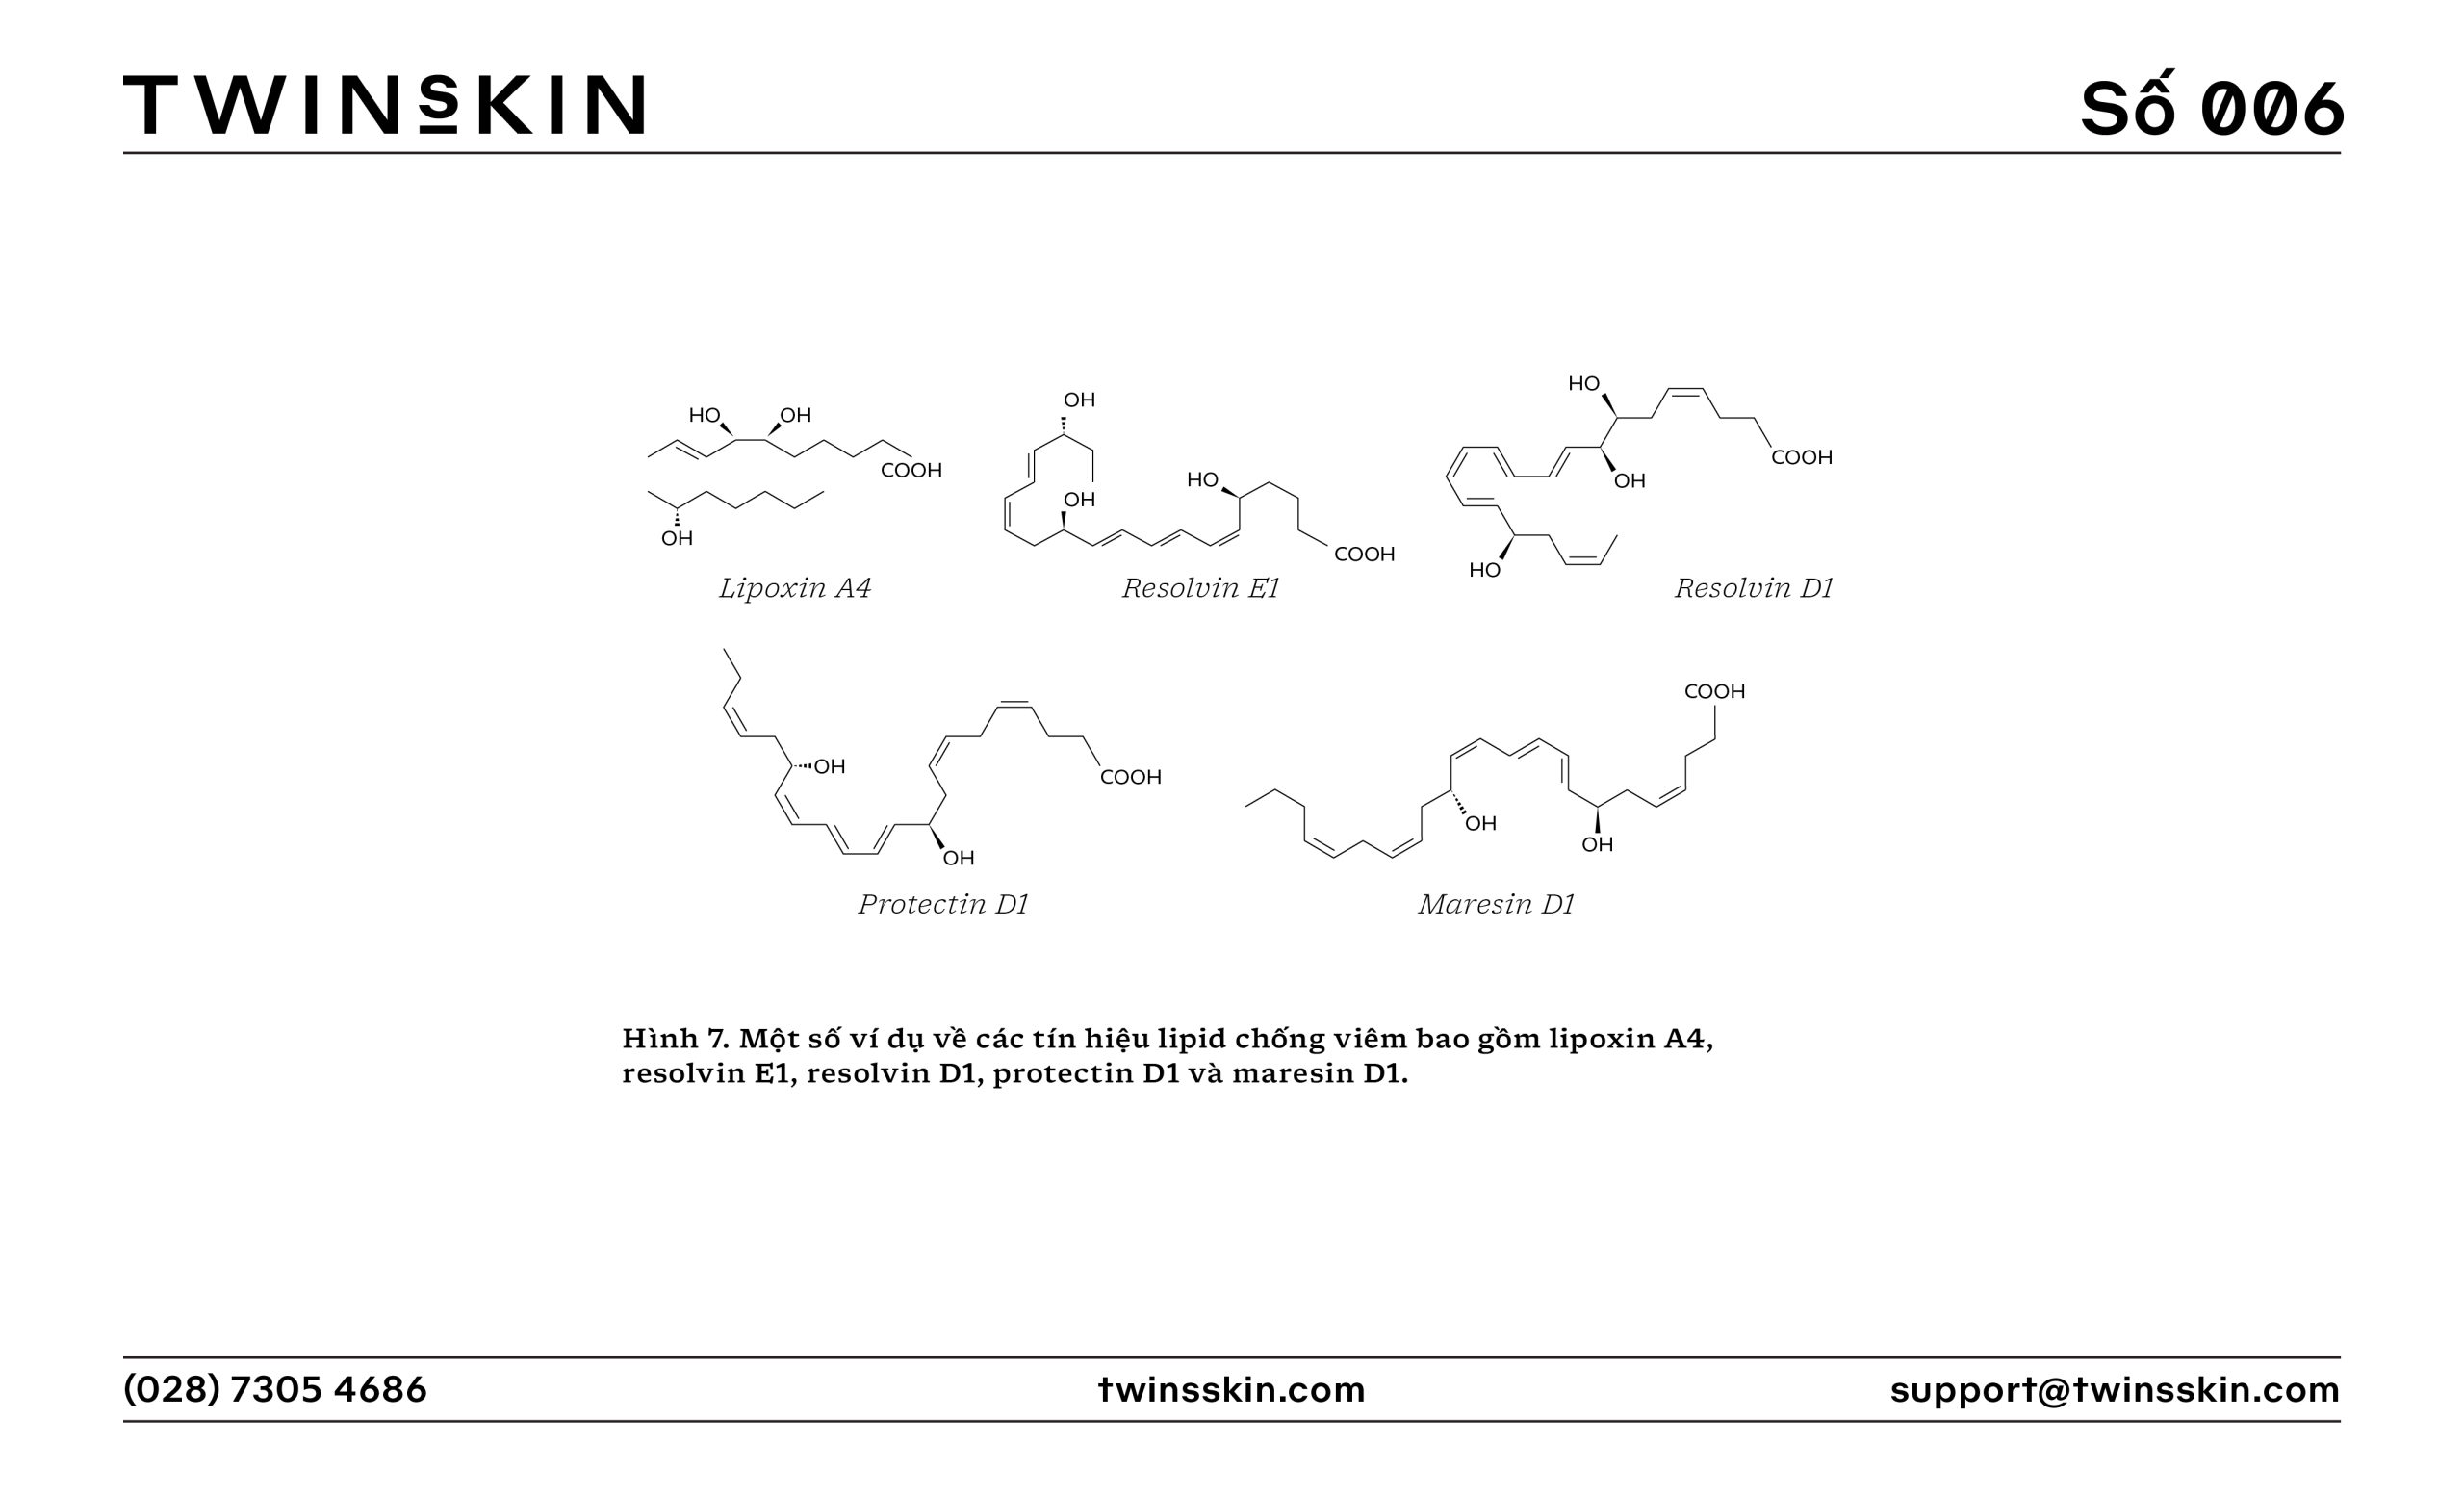 Một số ví dụ về các tín hiệu lipid chống viêm bao gồm lipoxin A4, resolvin E1, resolvin D1, protectin D1 và maresin D1.